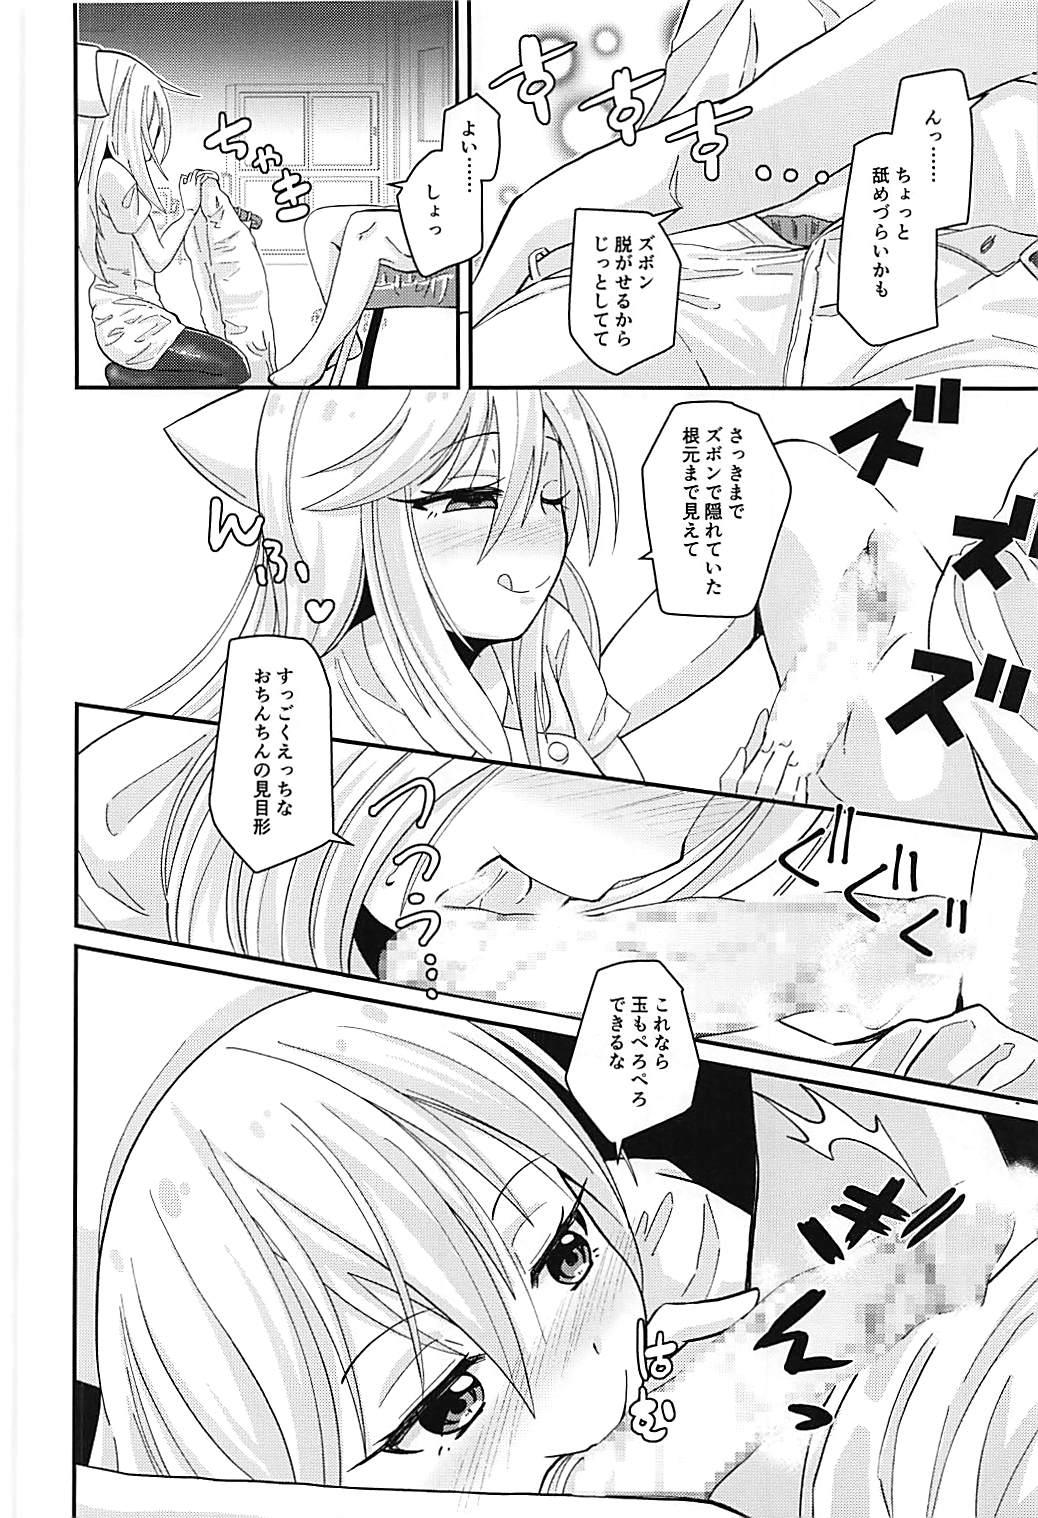 Big Ass Nurse Kikuzuki "ni" Namerare nagara - Kantai collection Abg - Page 5